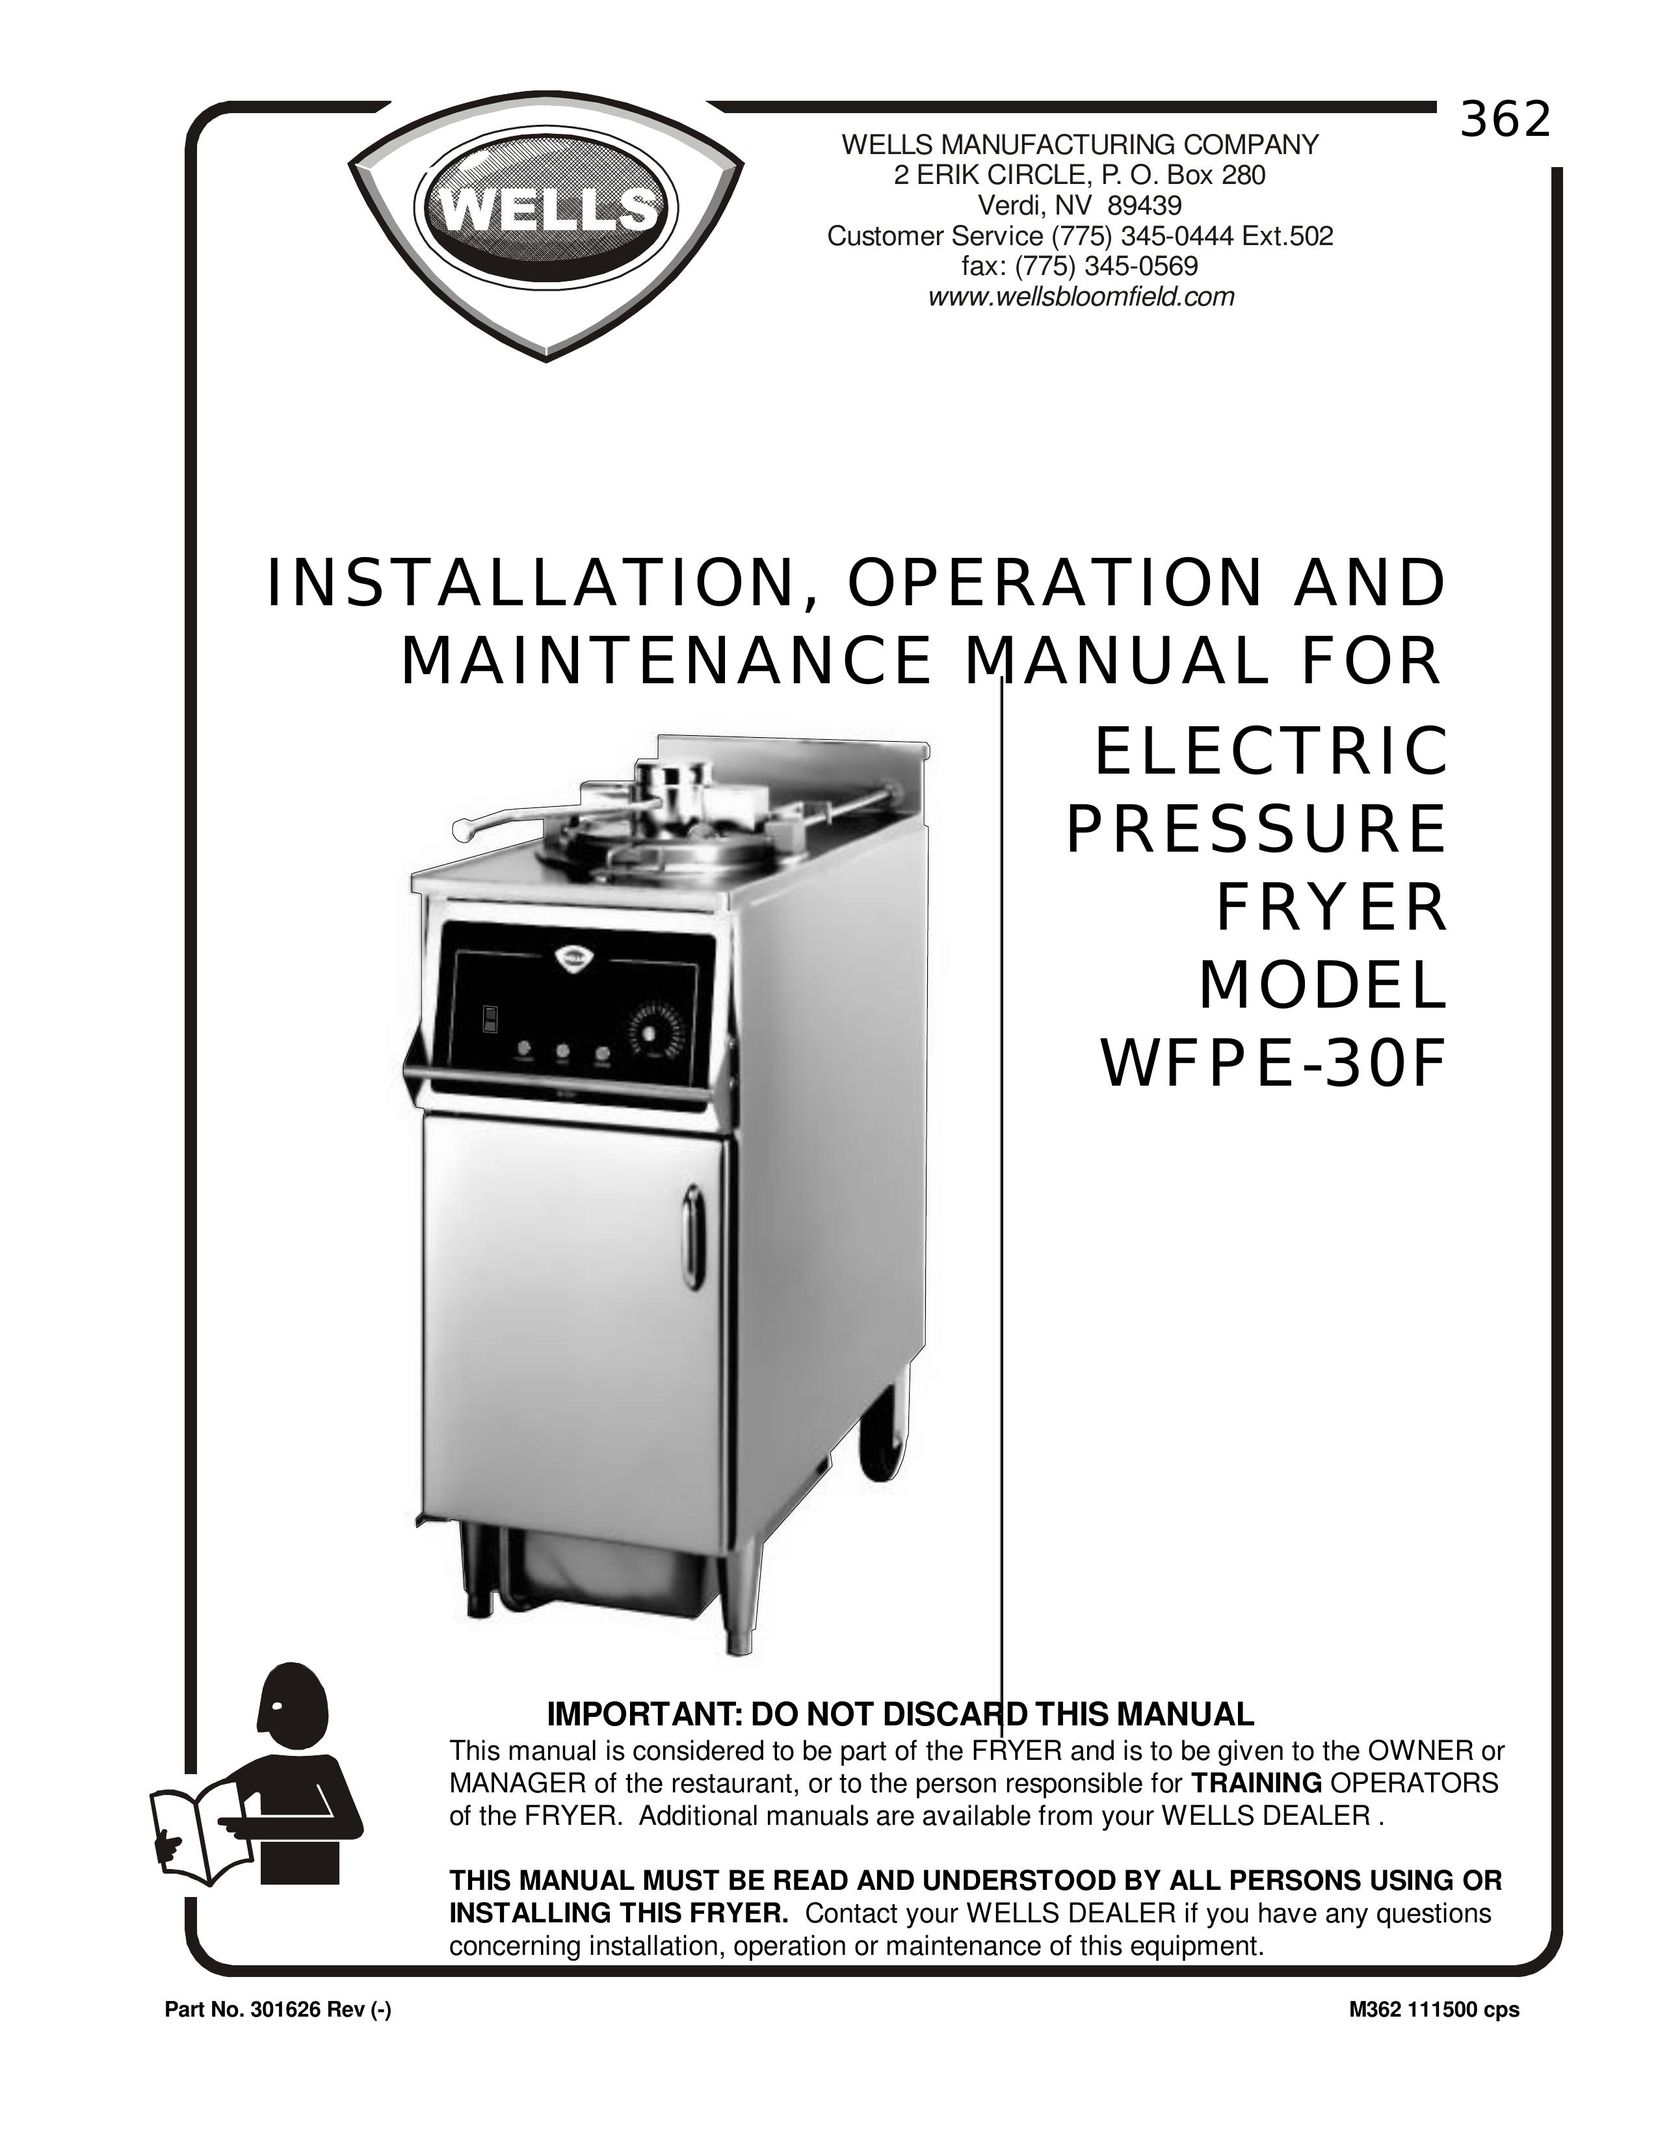 Bloomfield WFPE-30F Fryer User Manual